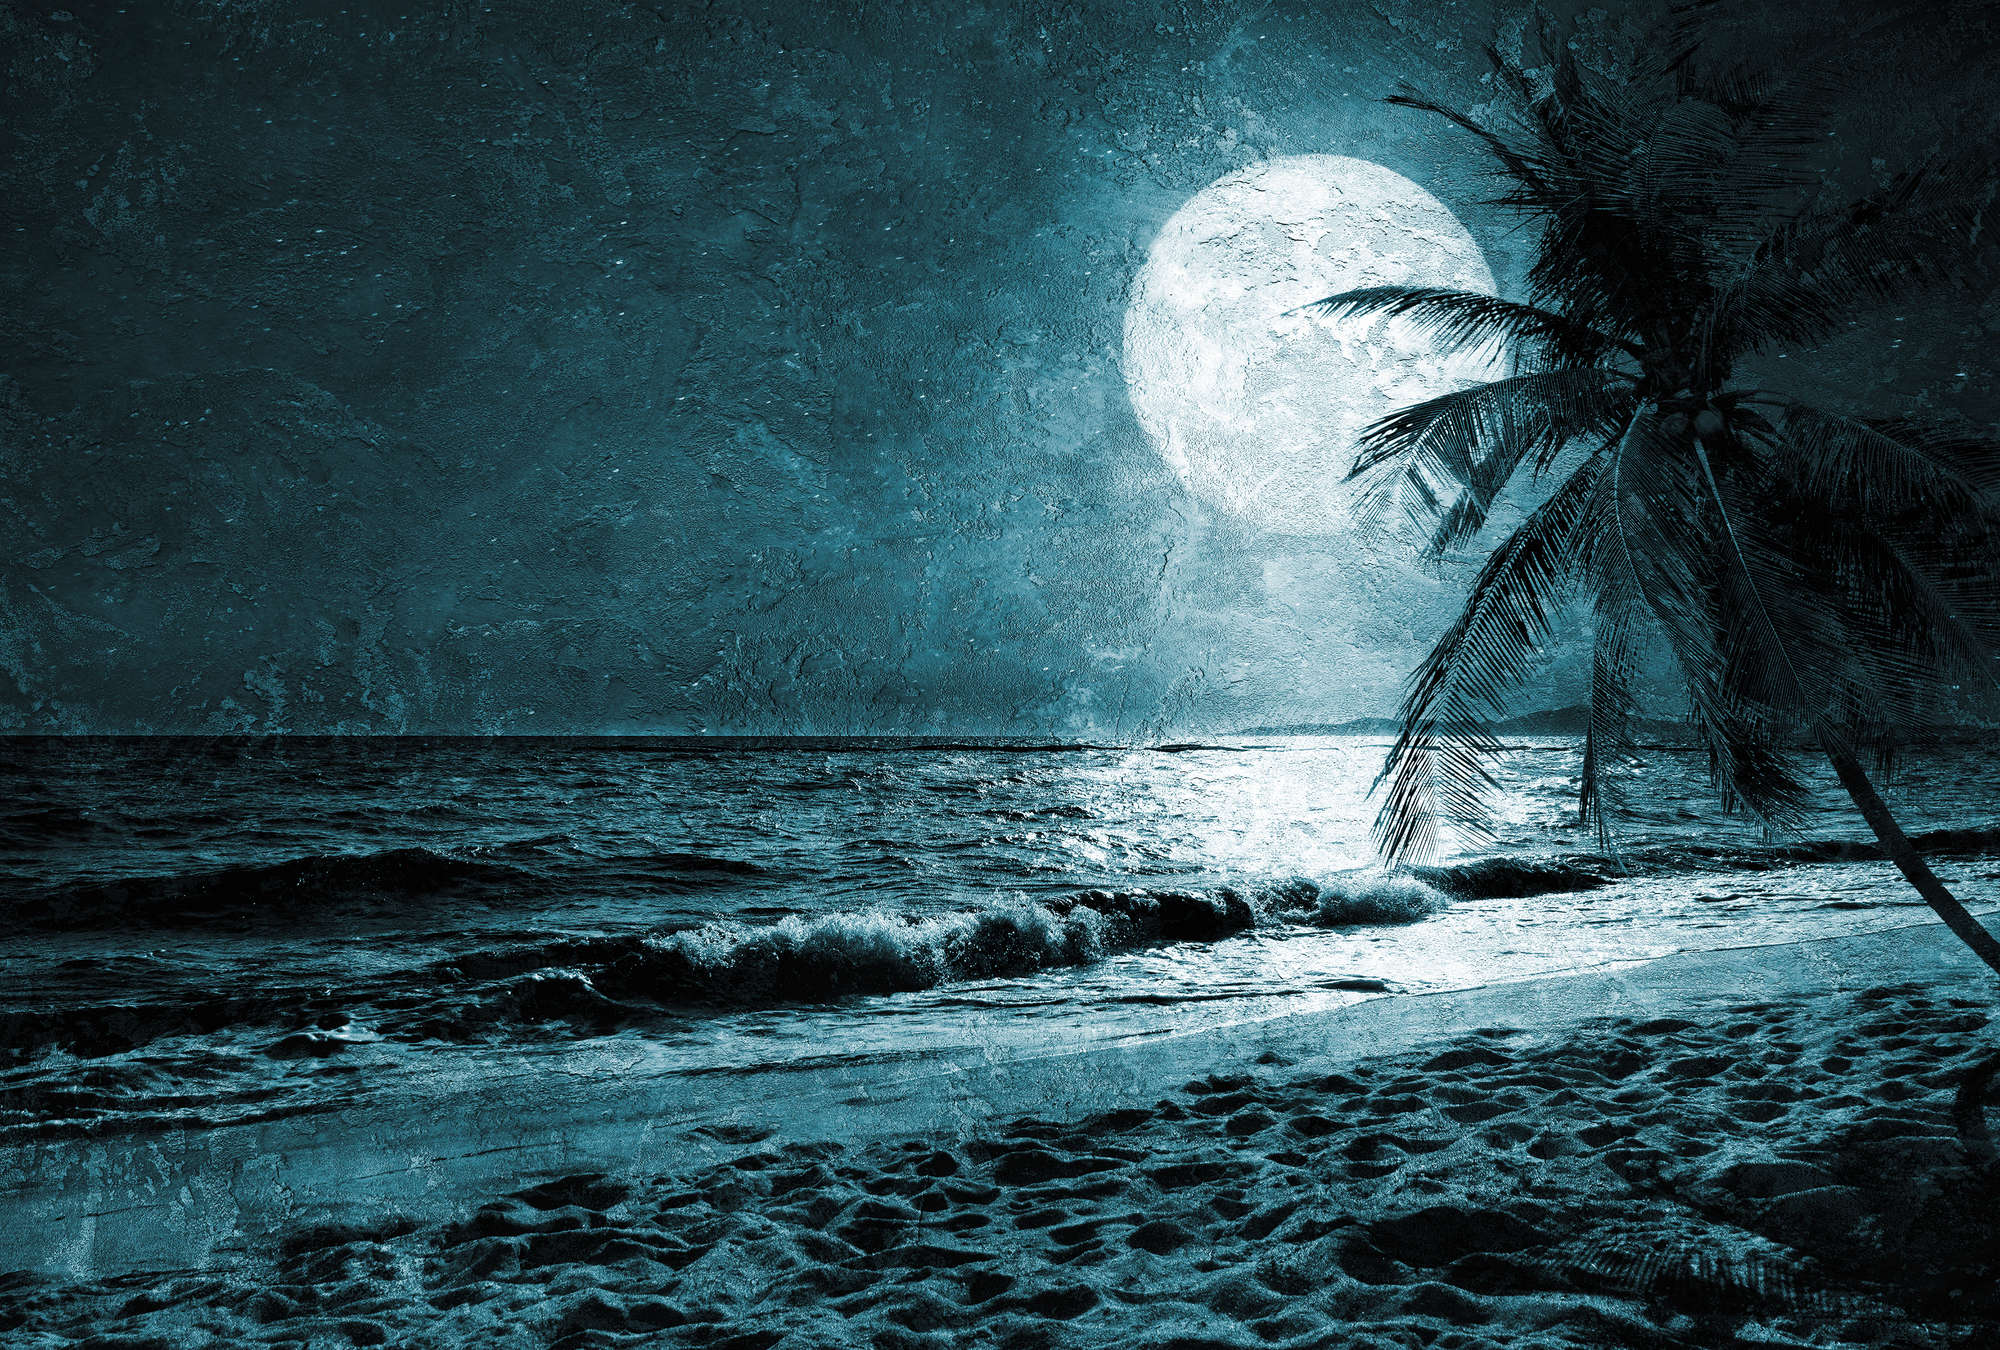             Strand Behang met Palmbomen & Zee bij Nacht - Blauw, Wit, Zwart
        